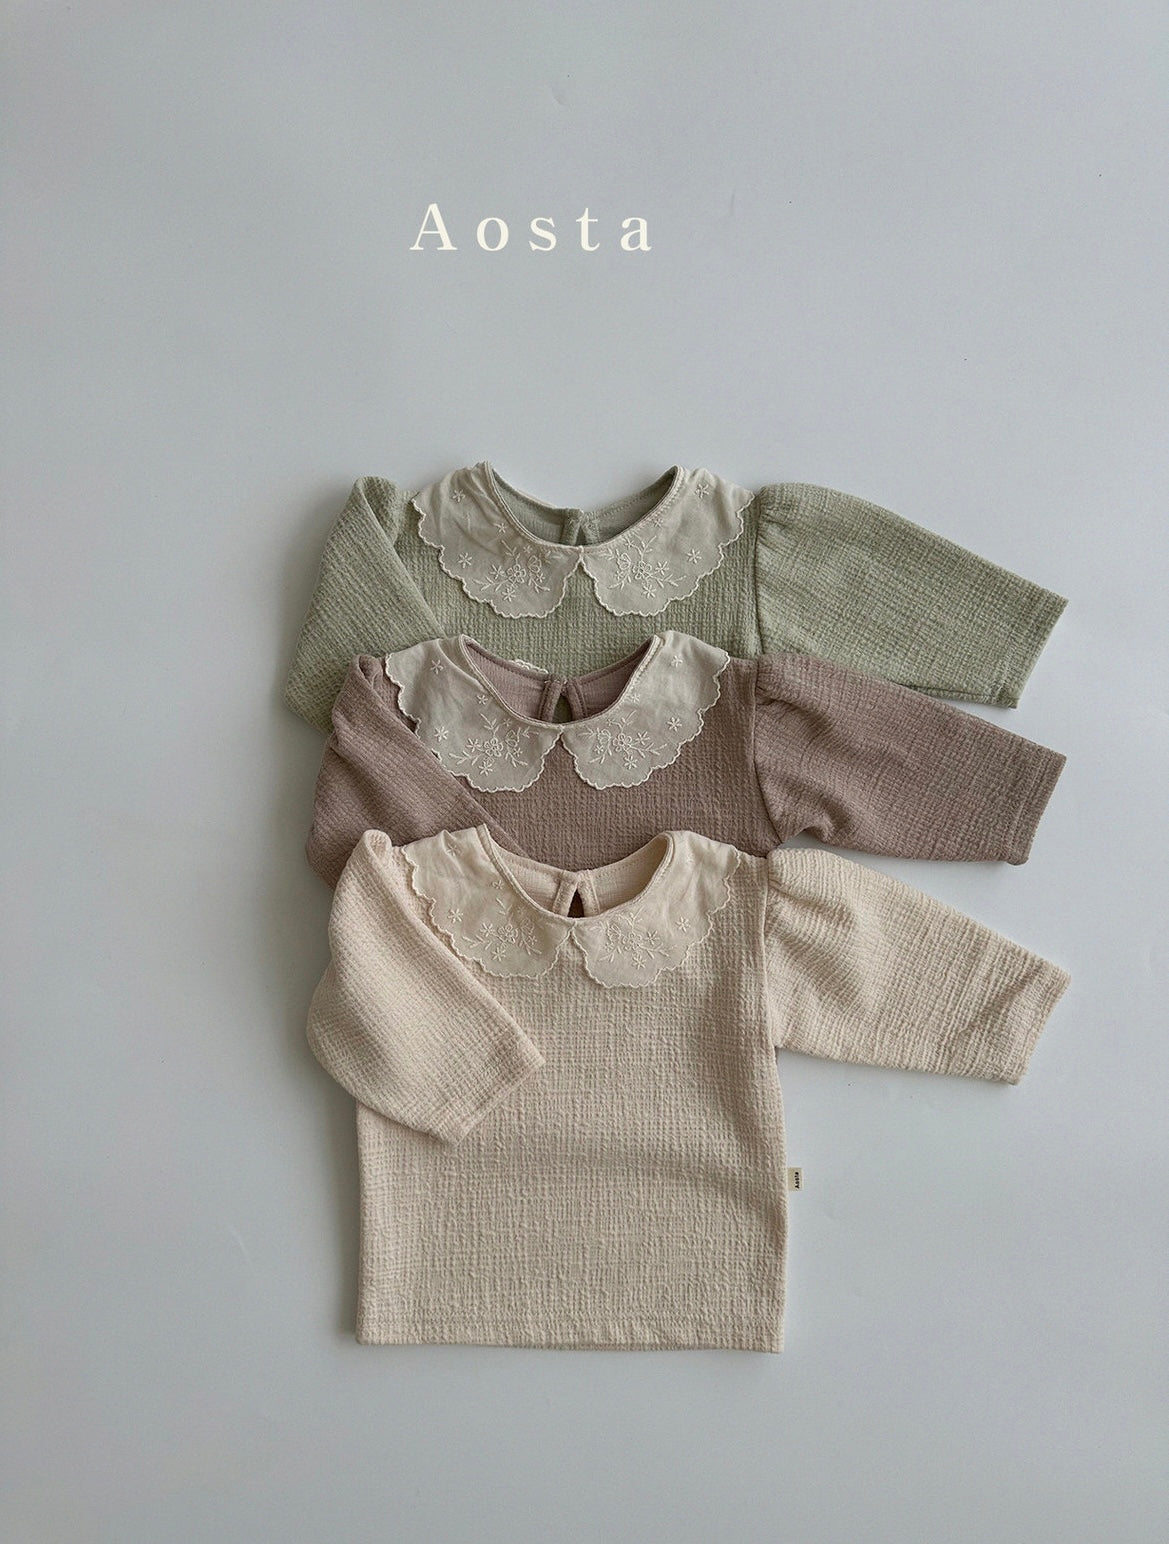 atelier blouse / mint